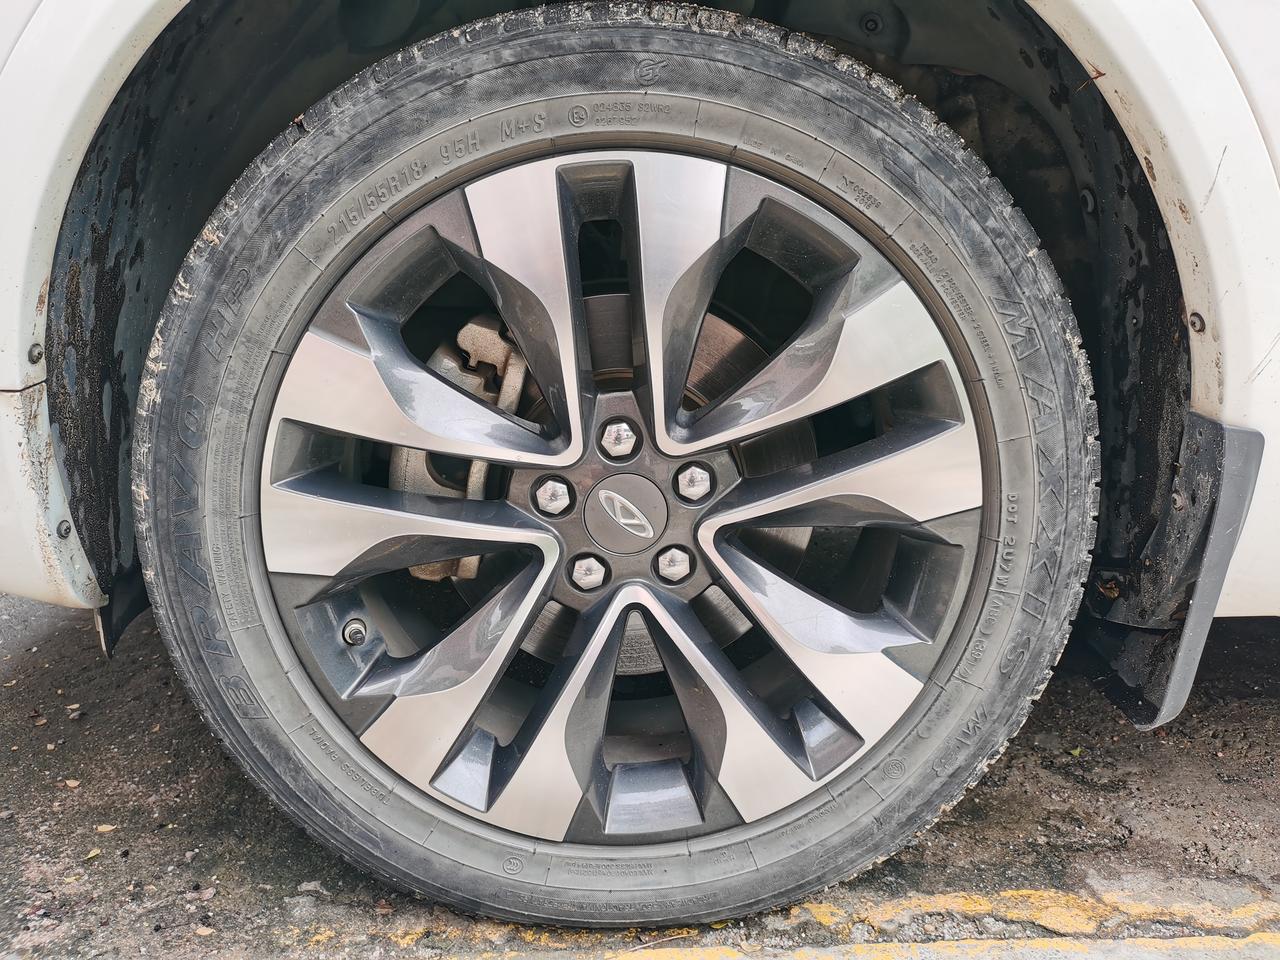 奇瑞瑞虎5x 2017款自动豪华版的轮胎是不玛吉斯轮胎